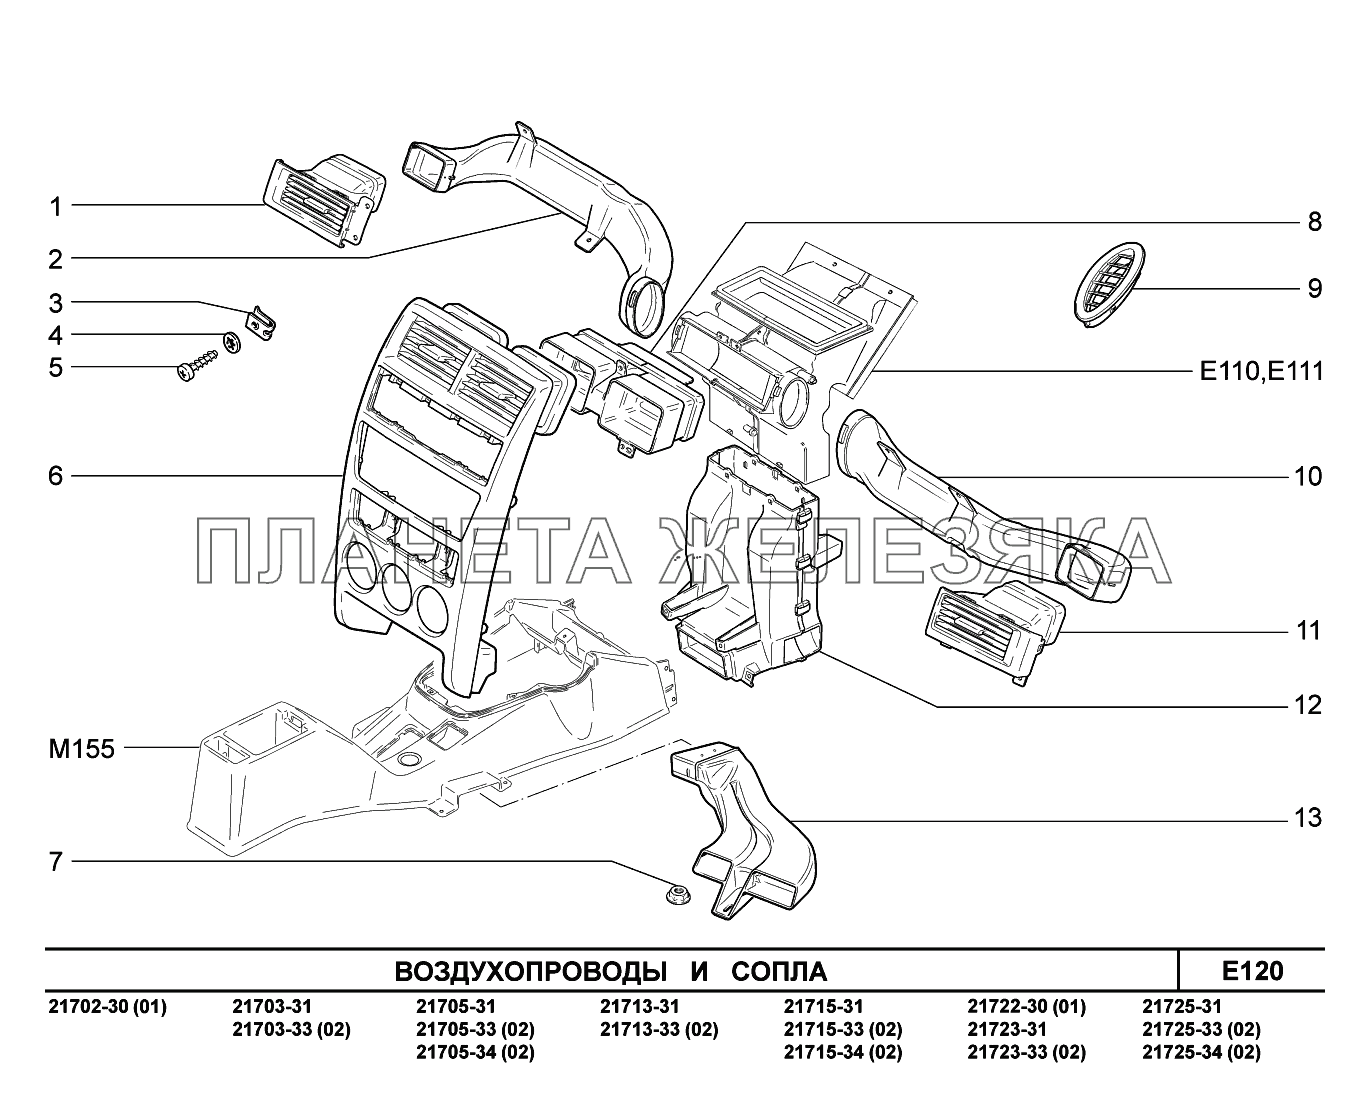 E120. Воздухопроводы и сопла ВАЗ-2170 